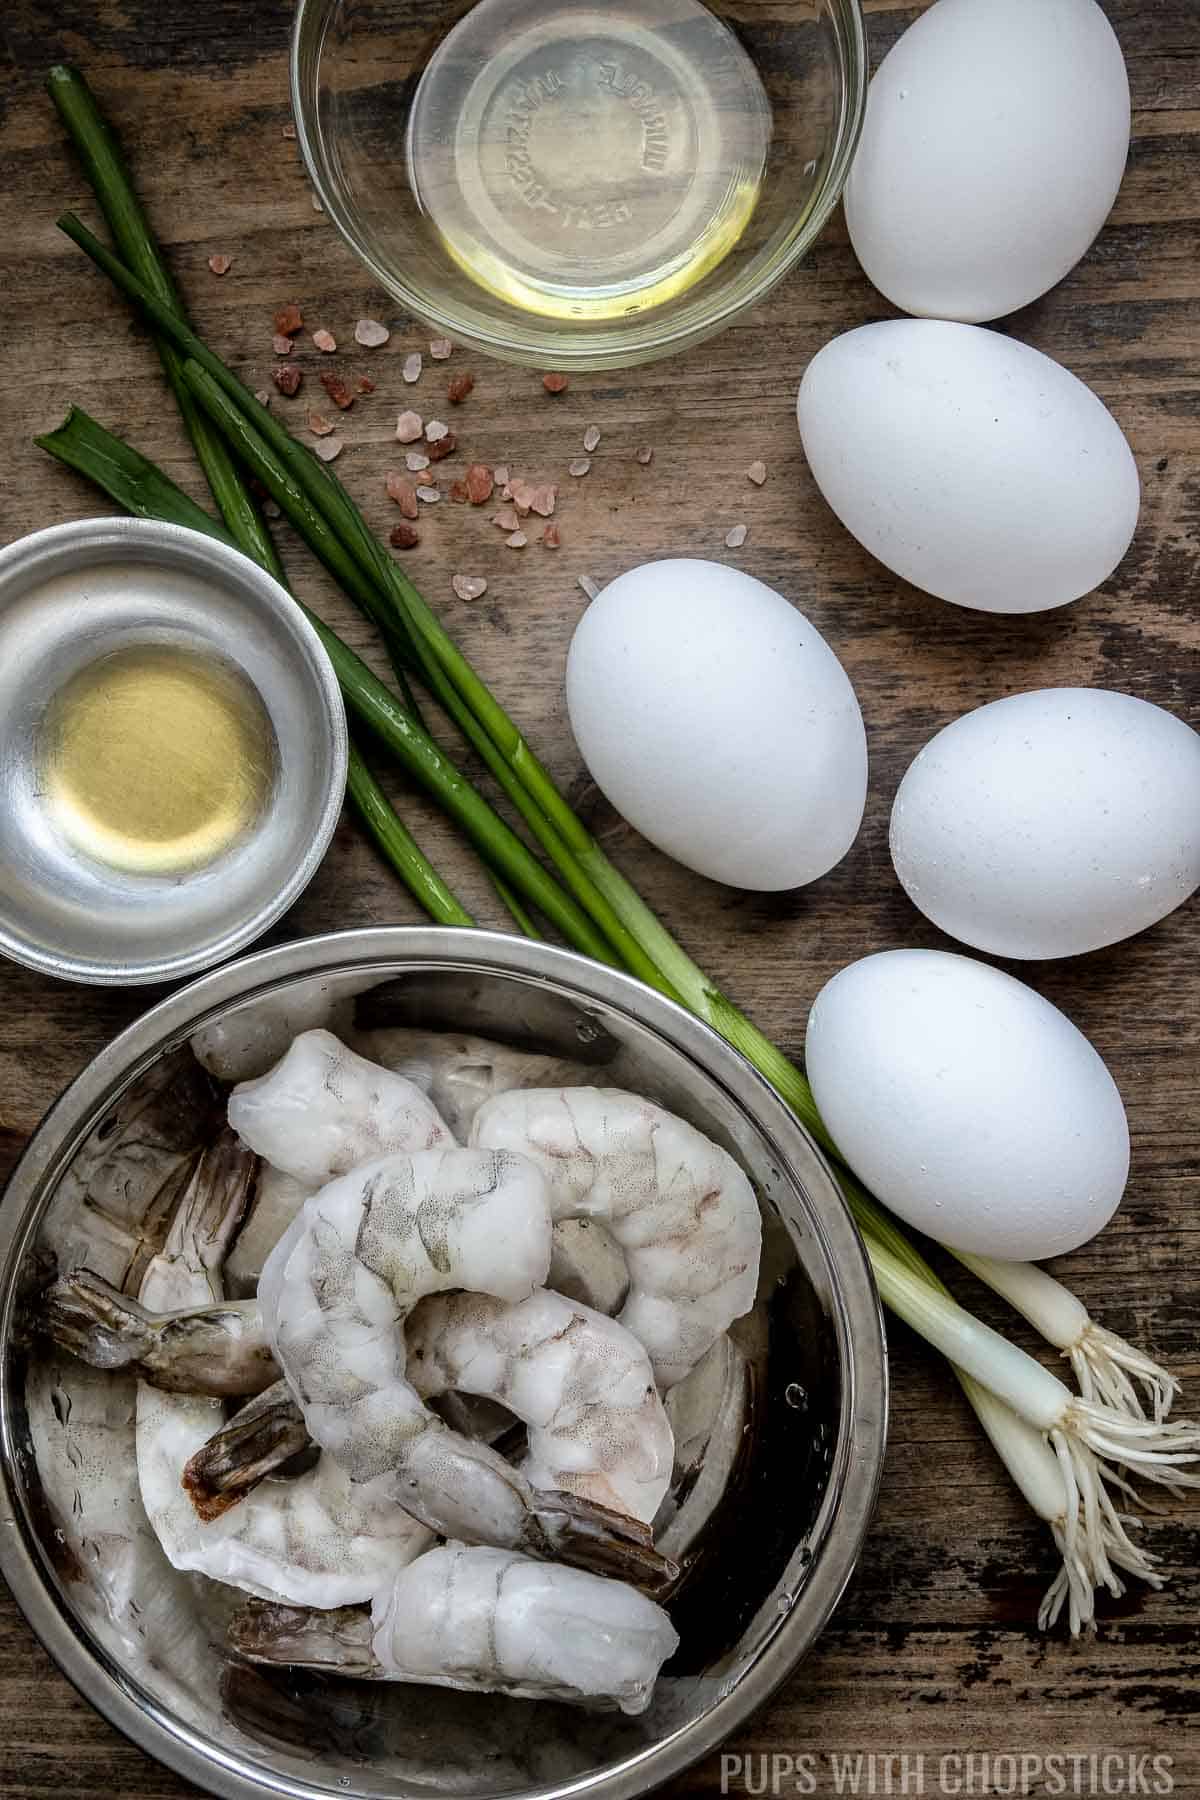 Mise en place for Chinese scrambled egg stir fry with shrimp (eggs, shrimp, sesame oil, salt, green onions, oil)